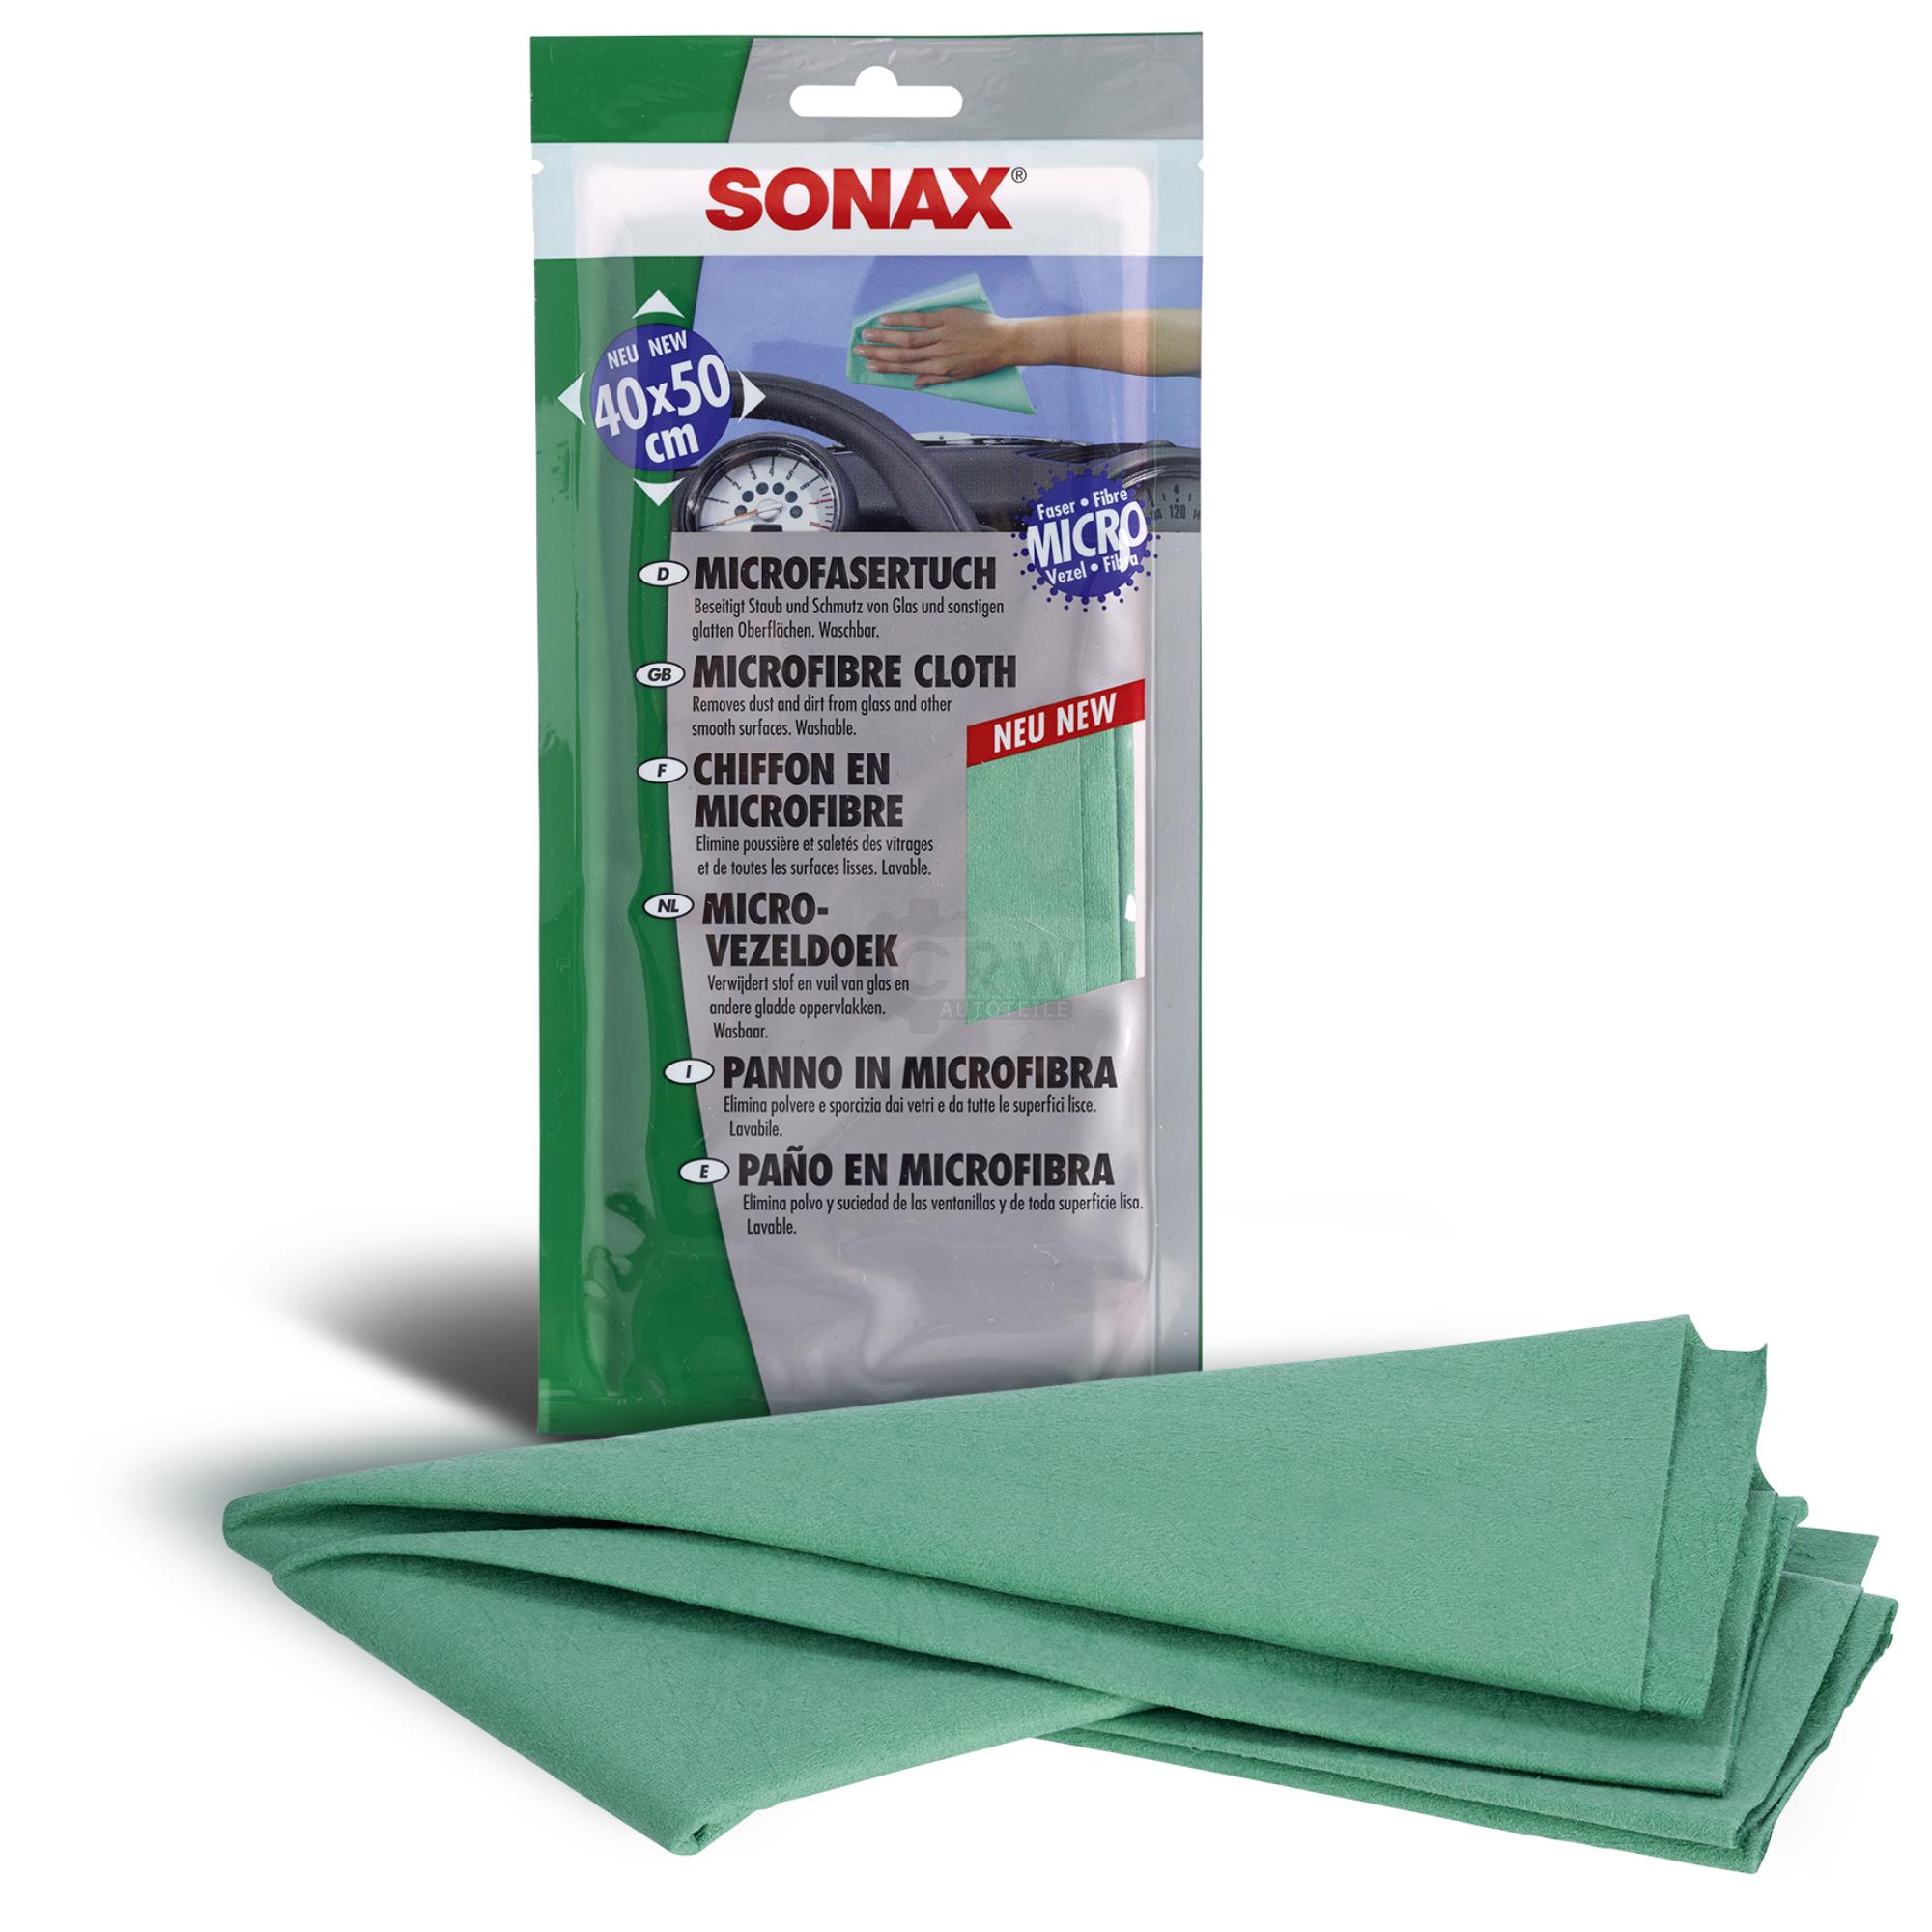 SONAX 04161000  MicrofaserTuch für alle glatten Oberflächen 1 Stück